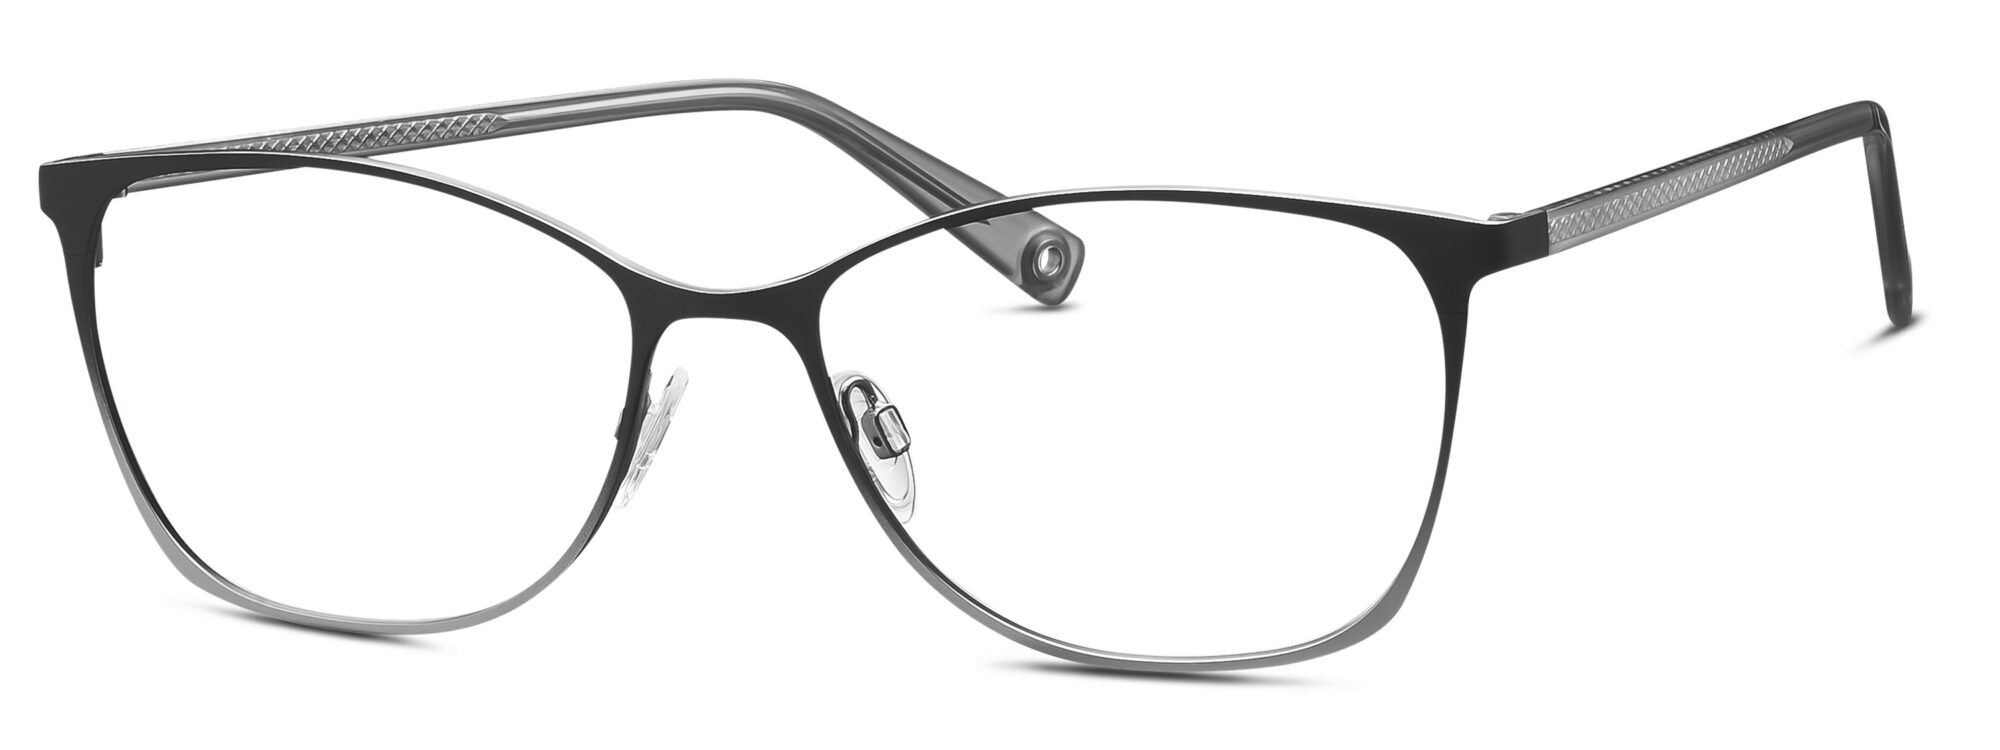 BRENDEL eyewear - 902303-30